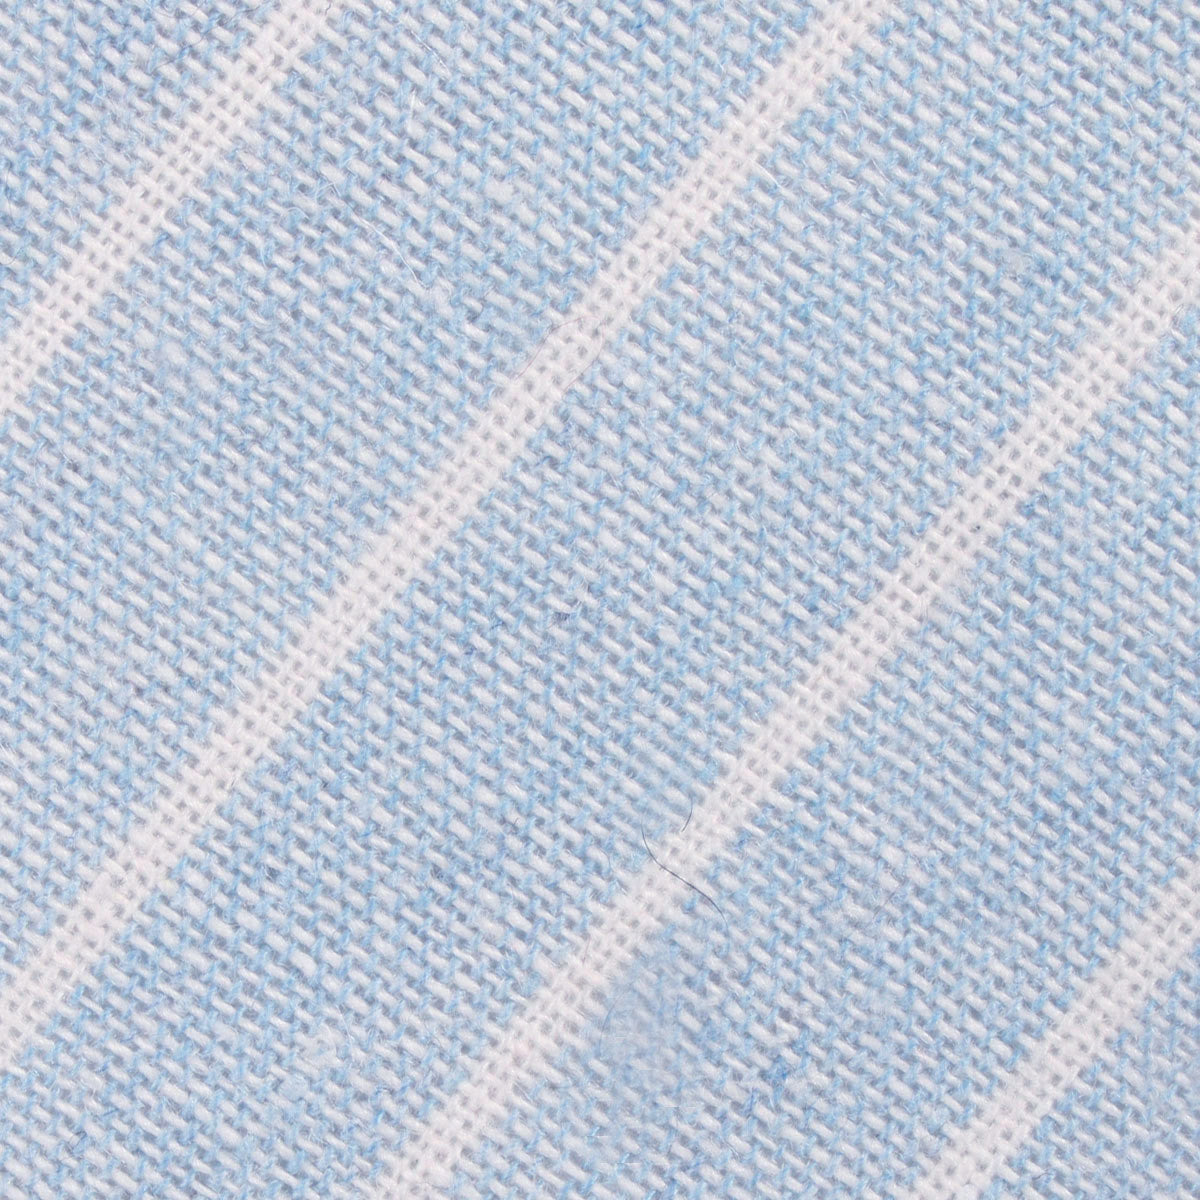 Baby Blue Wide Pinstripe Linen Tie | Striped Ties | Men's Neckties | OTAA